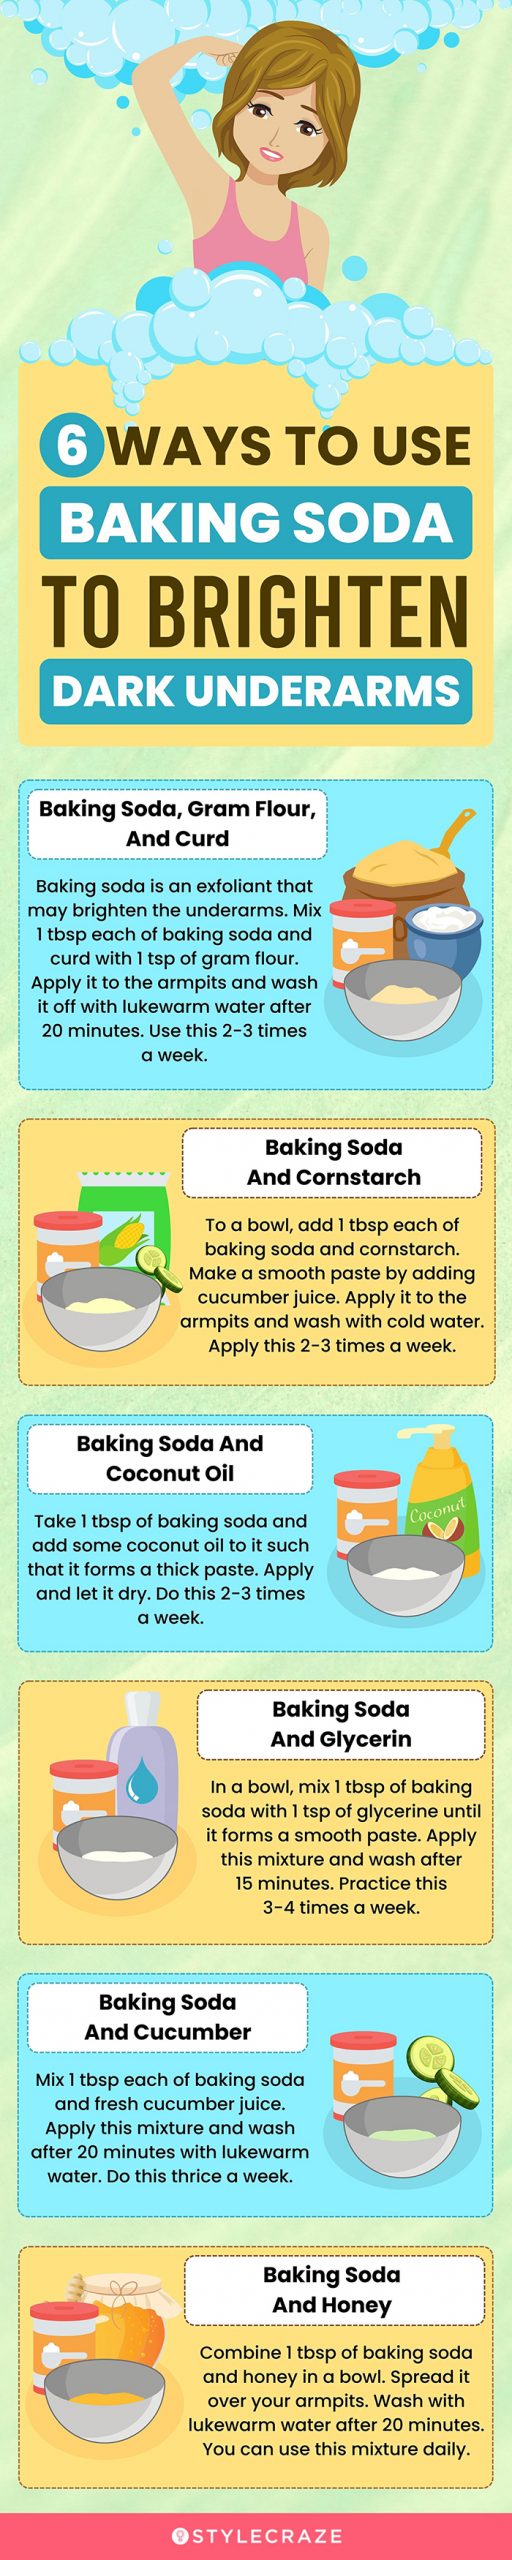 6 ways to use baking soda to brighten dark underarms (infographic)